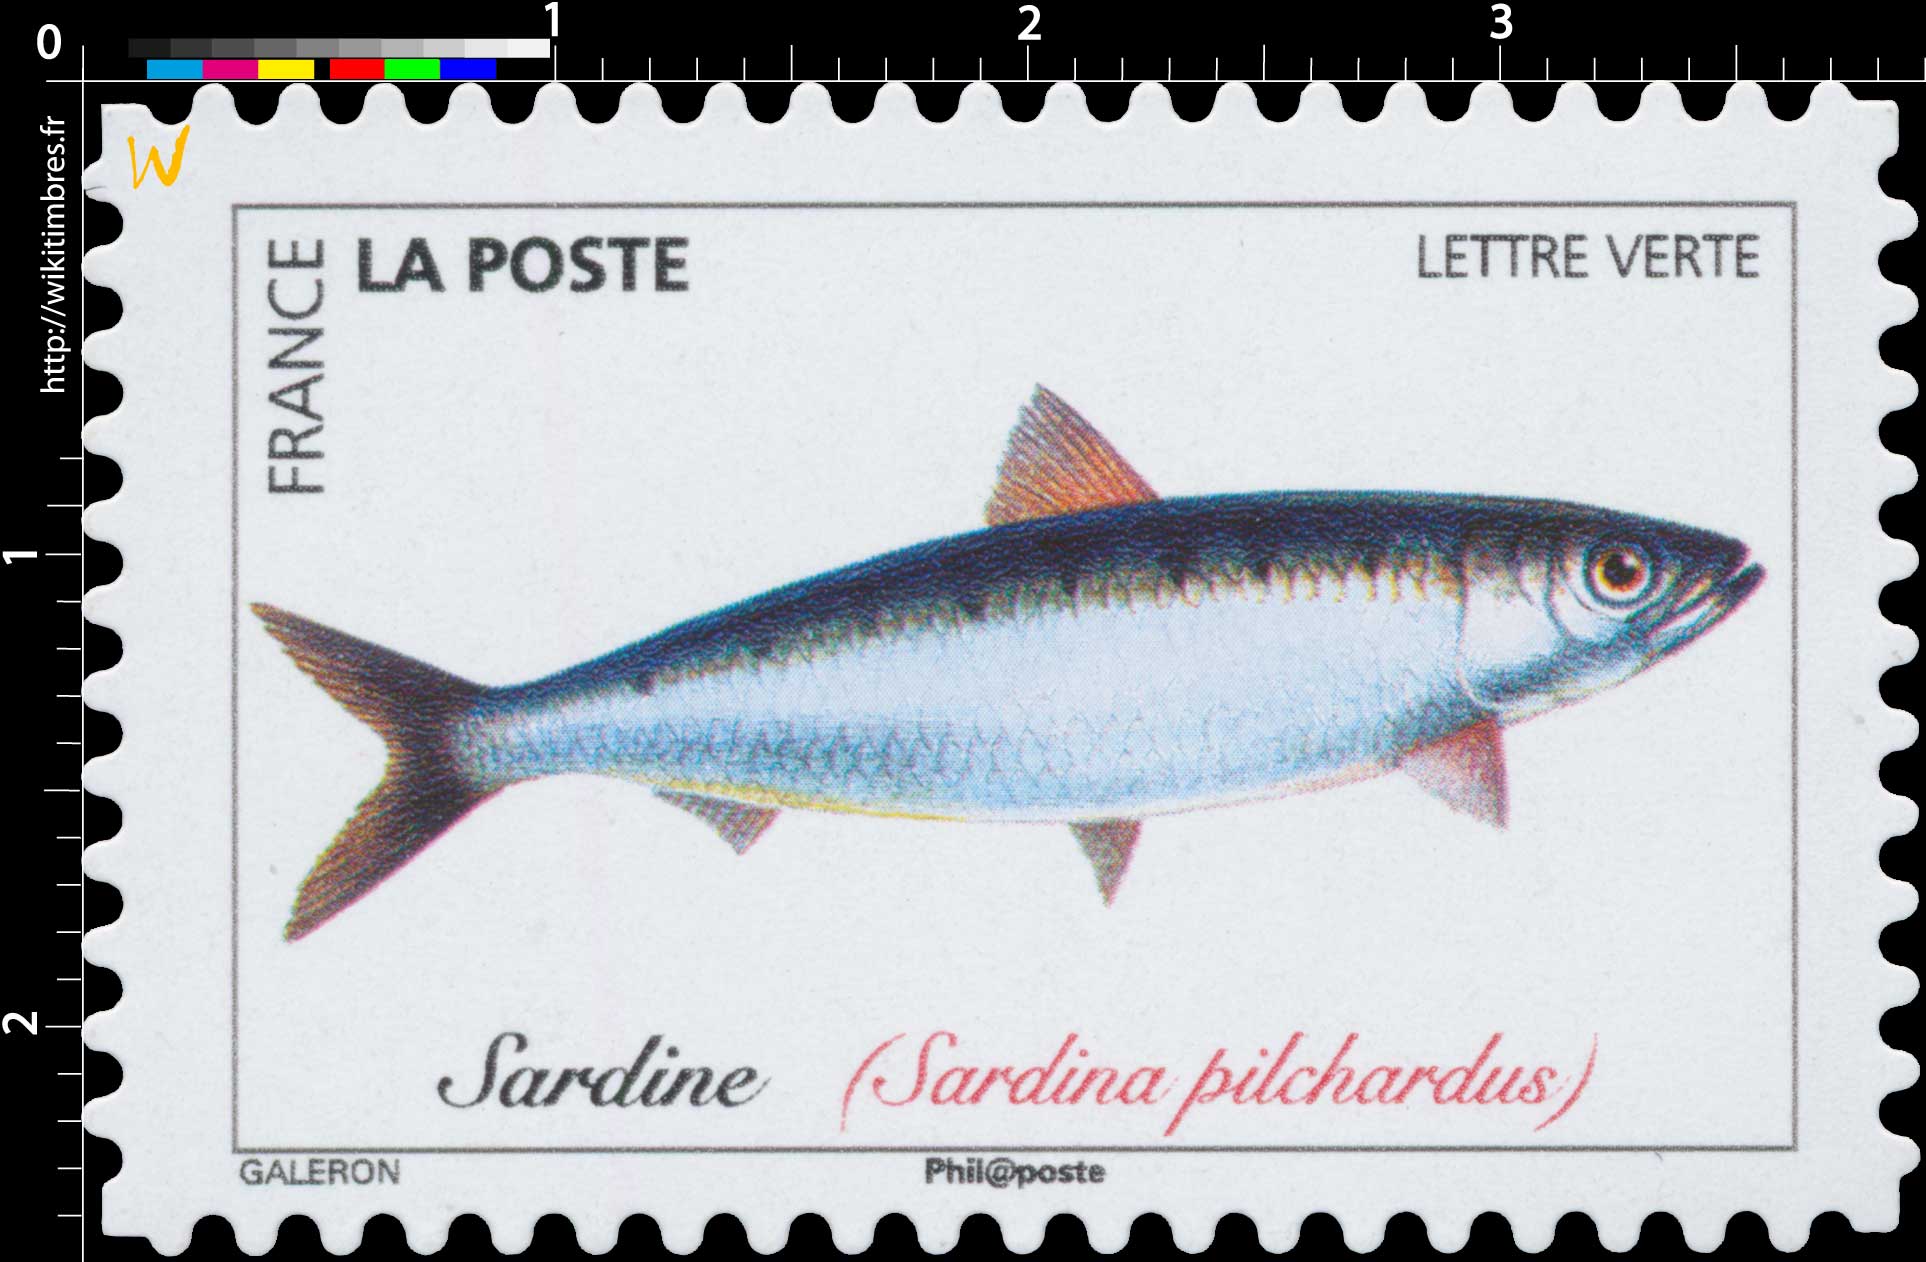 2019 Sardine (Sardina pilchardus)